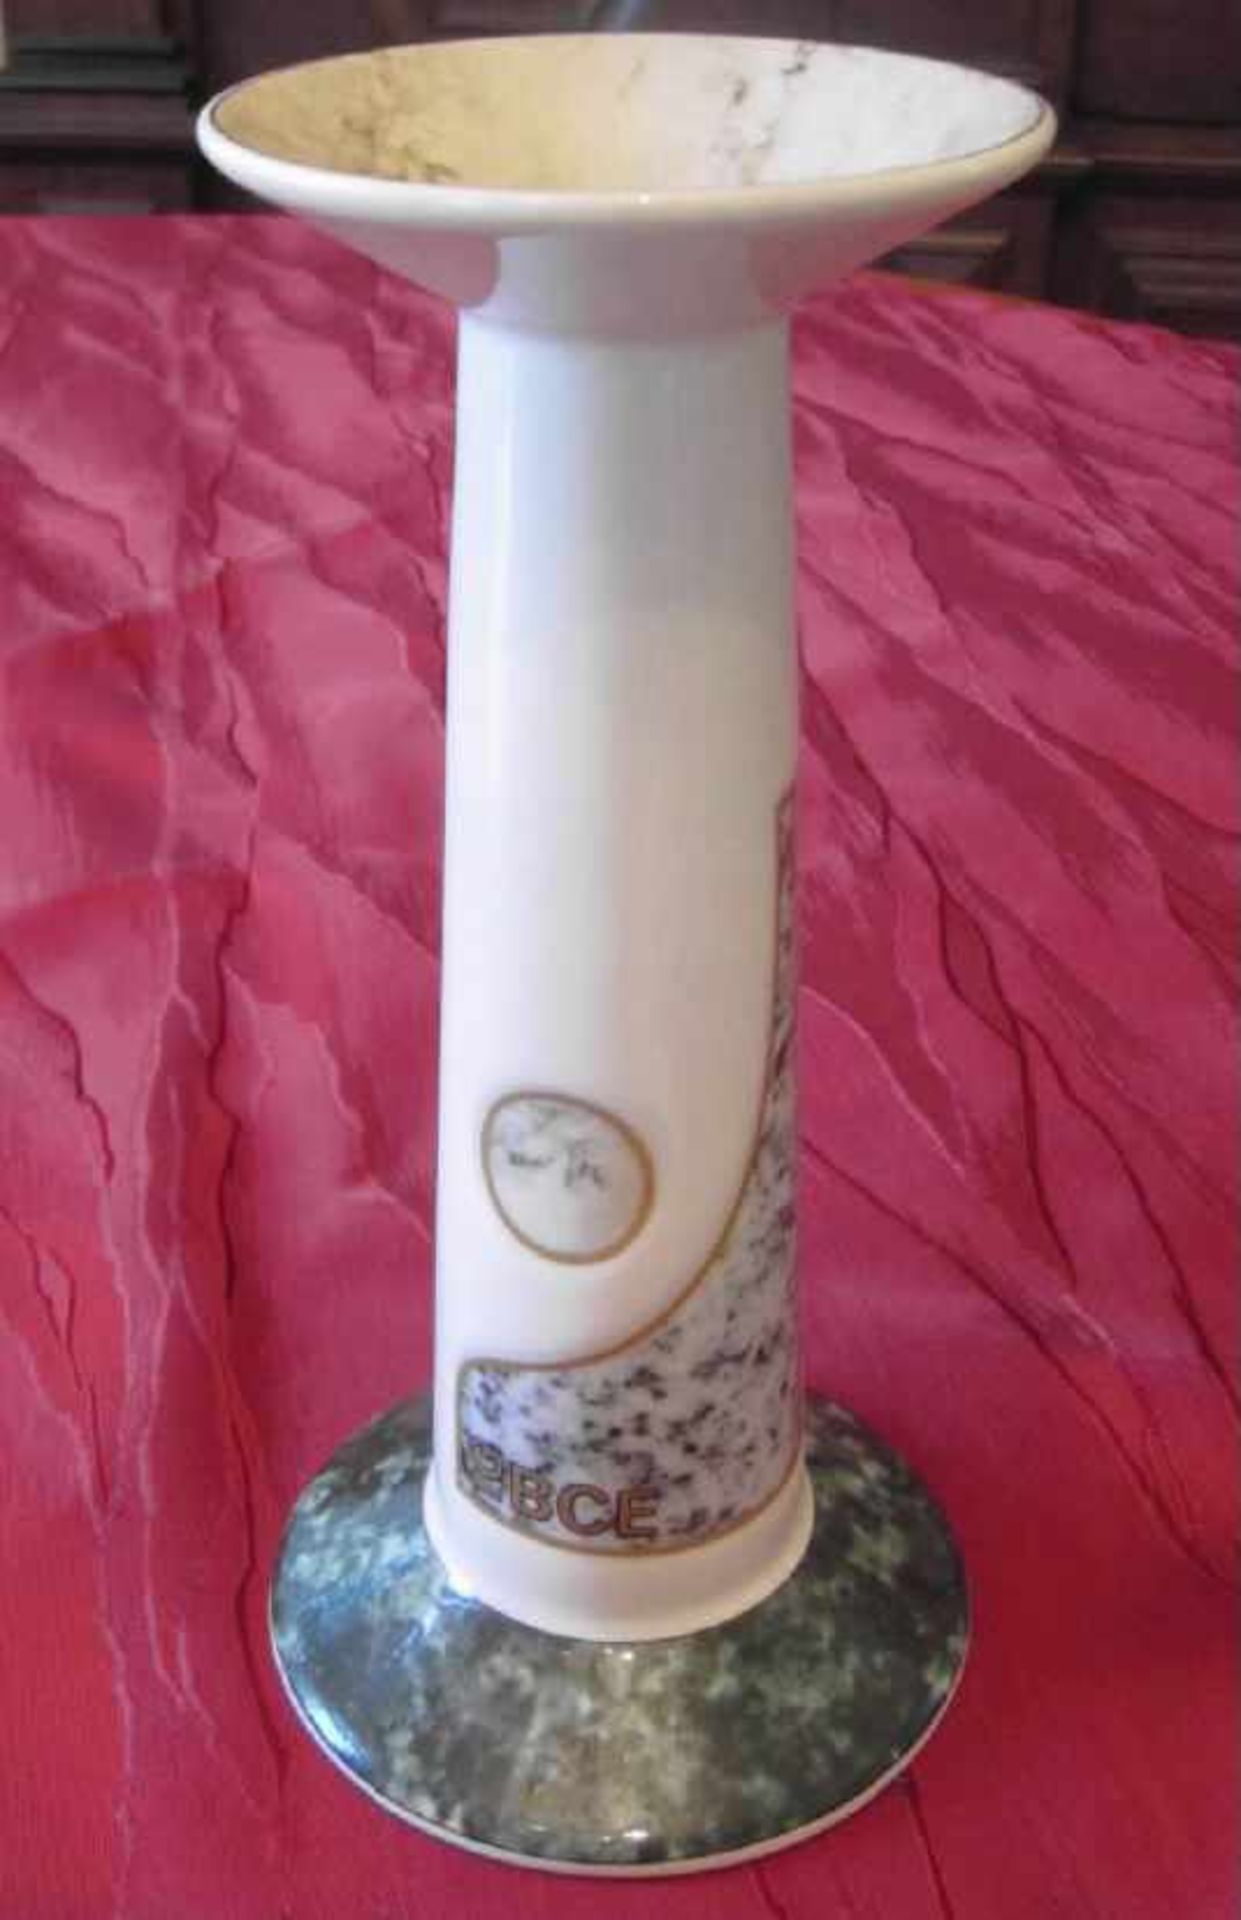 Hutschenreuther, Porzellan Kerzenleuchter, Jubiläum IGBCE, PastorModernes Dekor Jubiläum IG BCE (